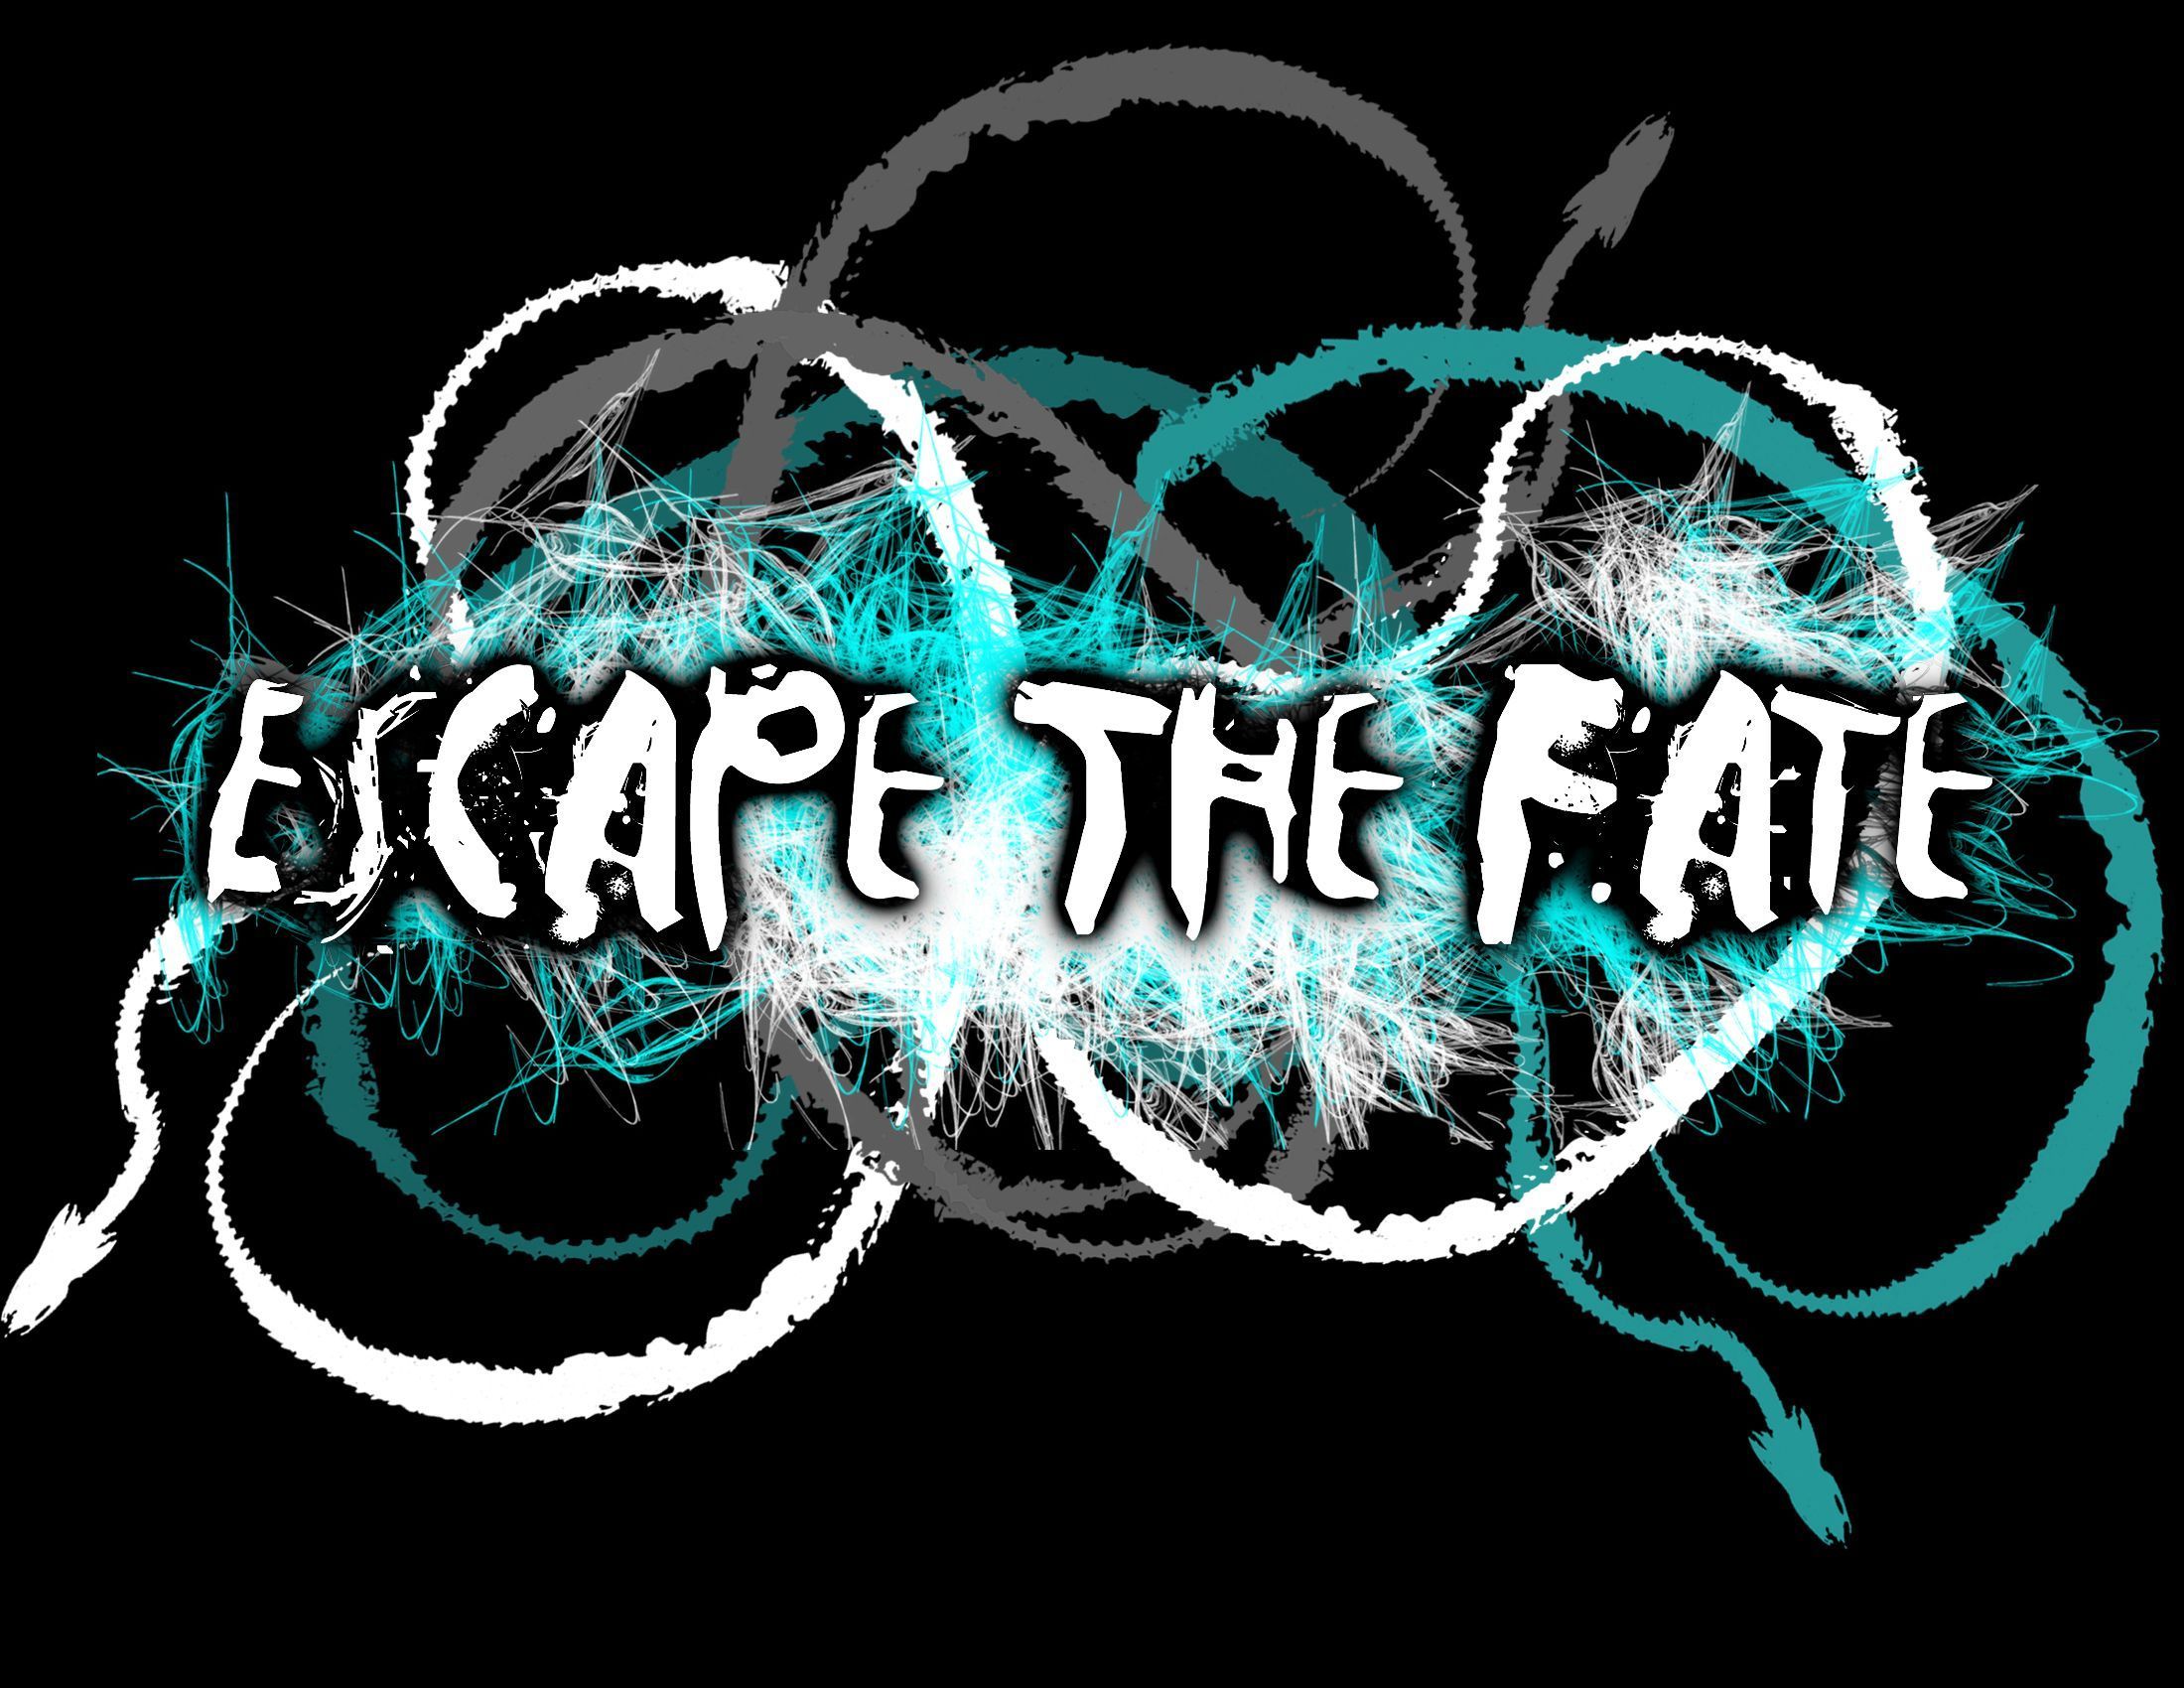 Escape The Fate - Music Photo 31120480 - Fanpop